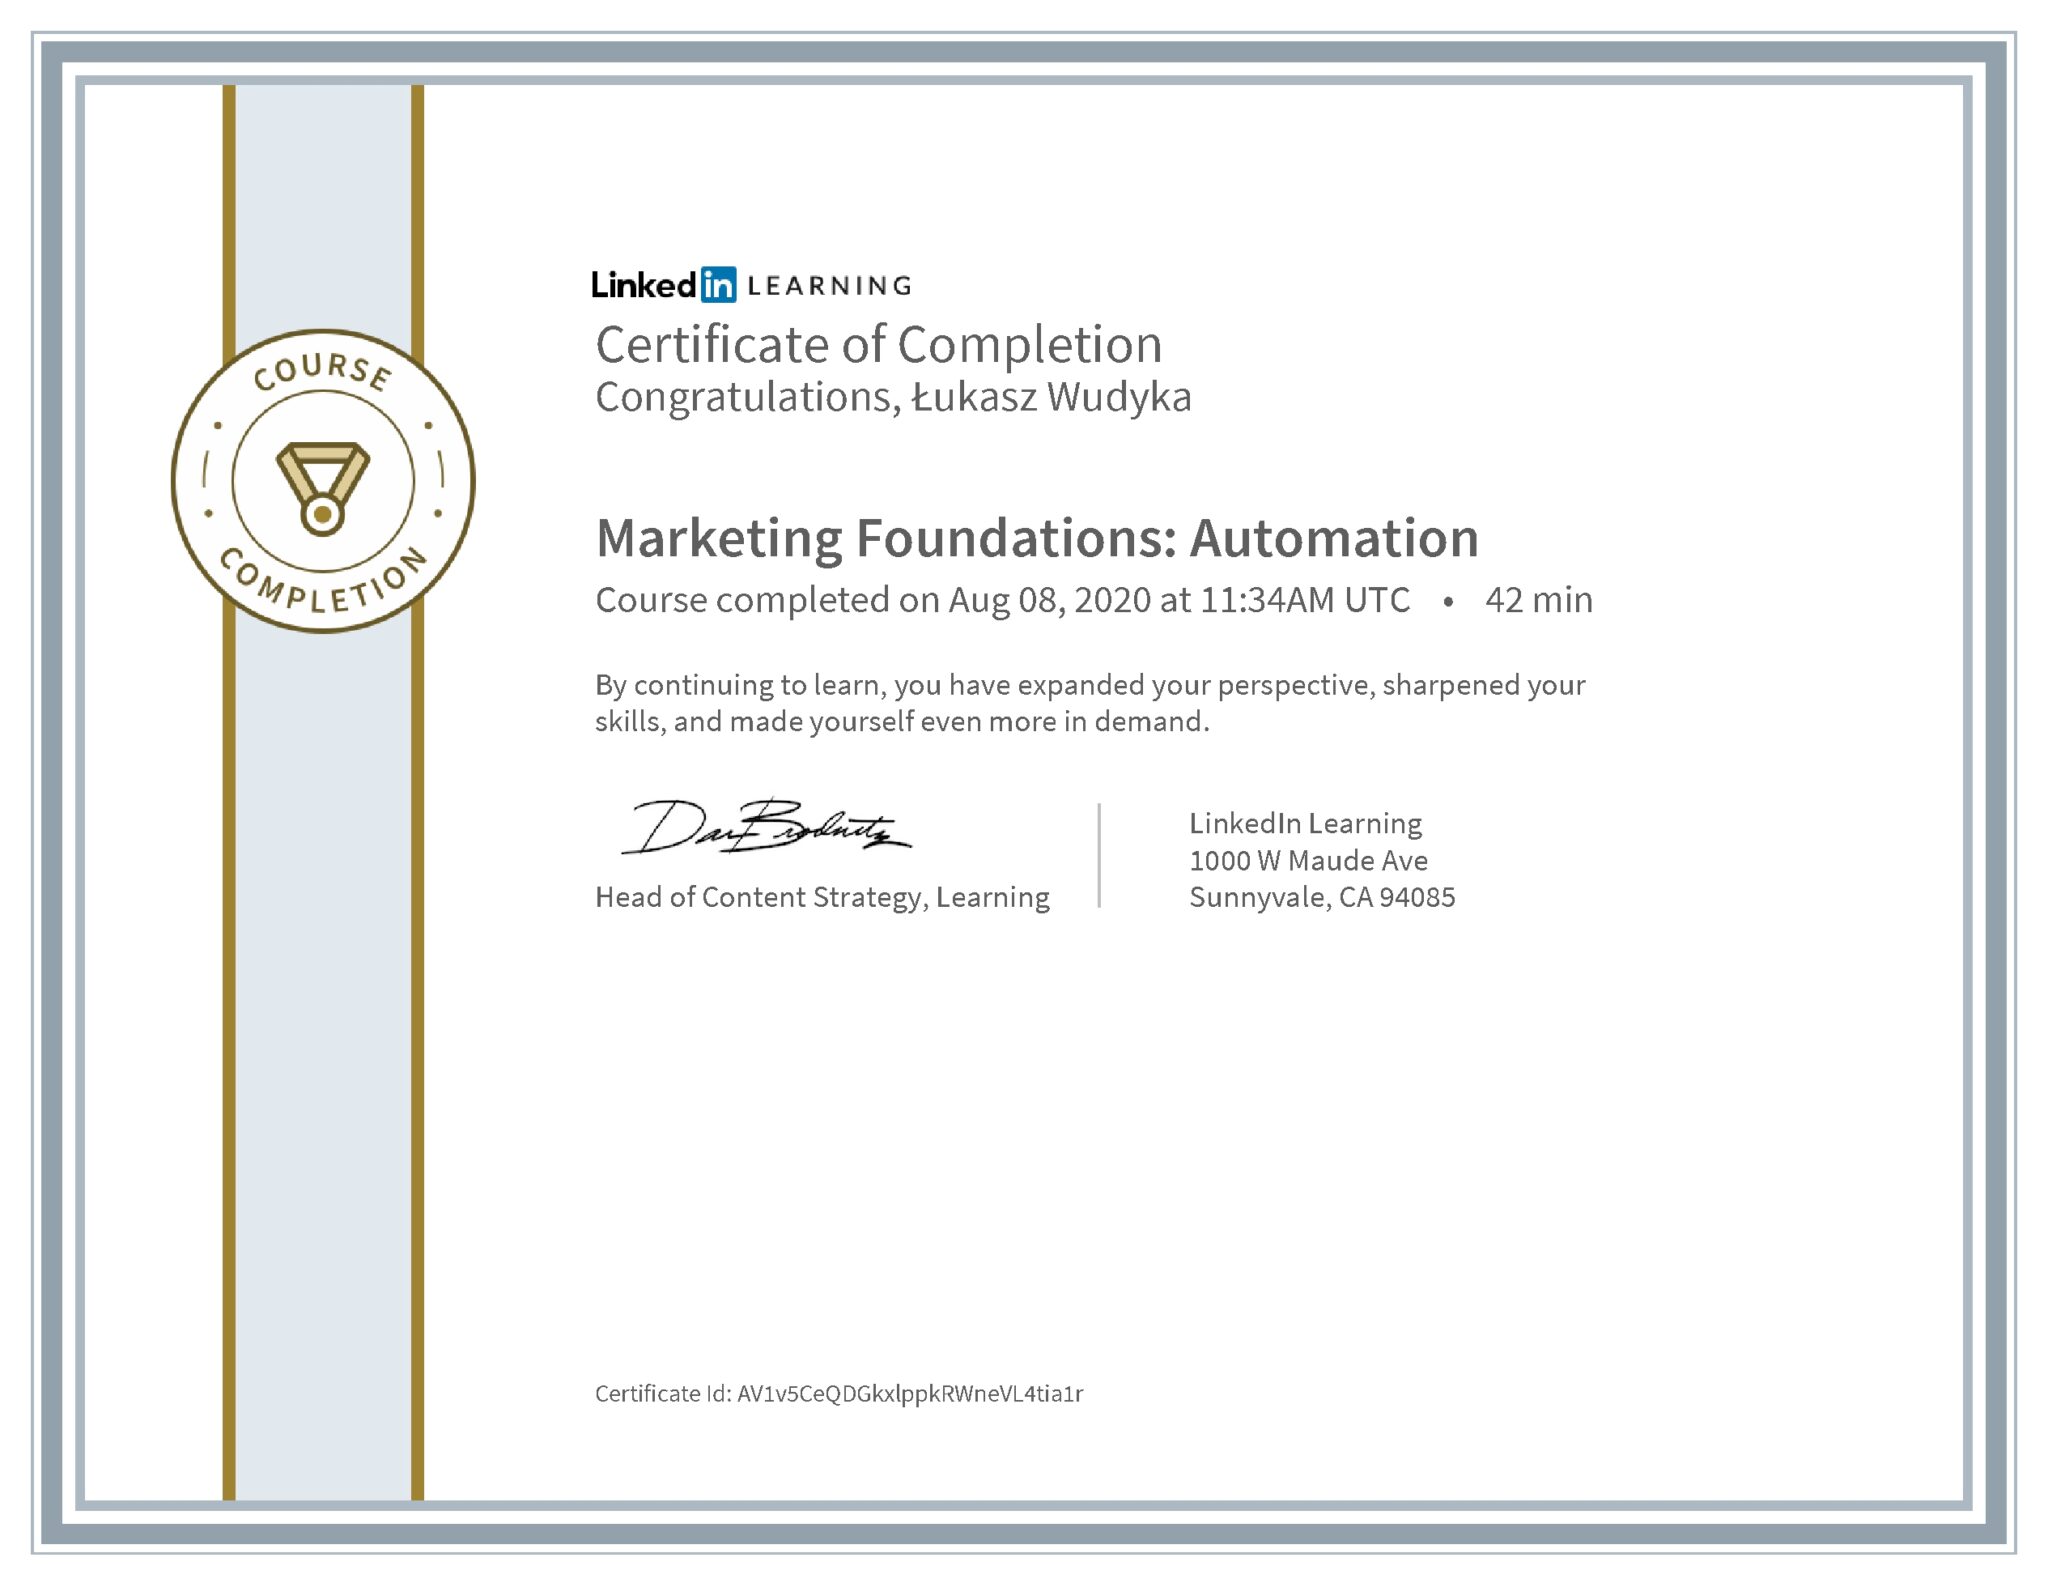 Łukasz Wudyka certyfikat LinkedIn Marketing Foundations: Automation